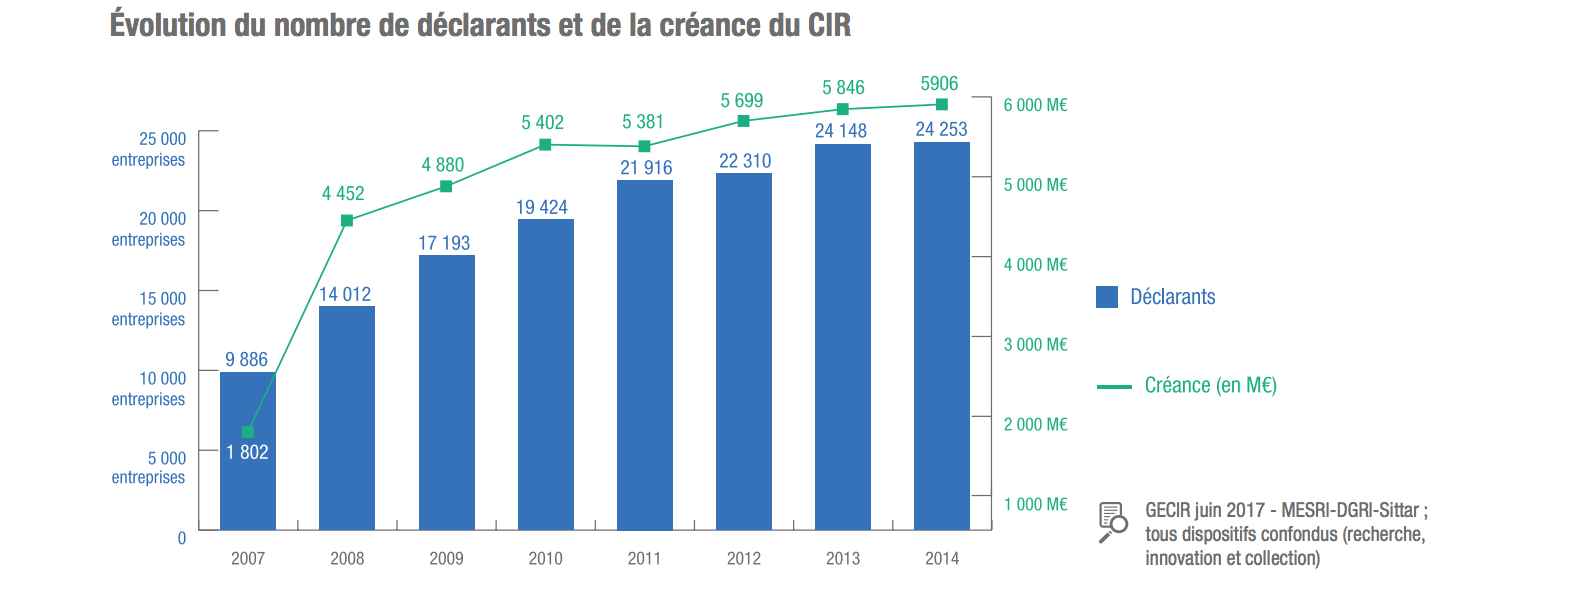 L’usage du CIR s’est stabilisé en 2014, constate le MESRI dans son étude annuelle